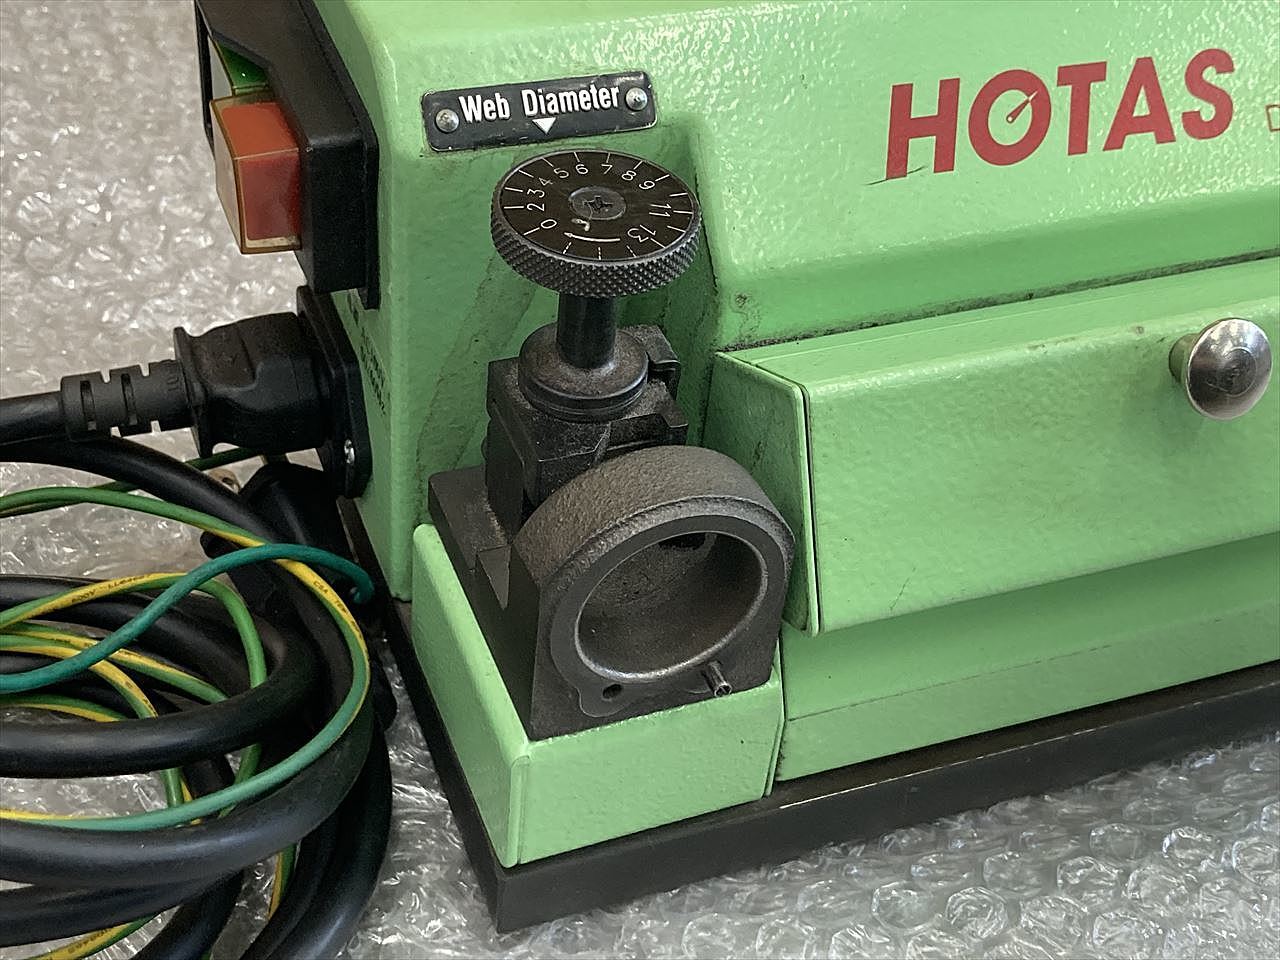 C134370 ドリル研磨機 HOTAS DG-1S | 株式会社 小林機械